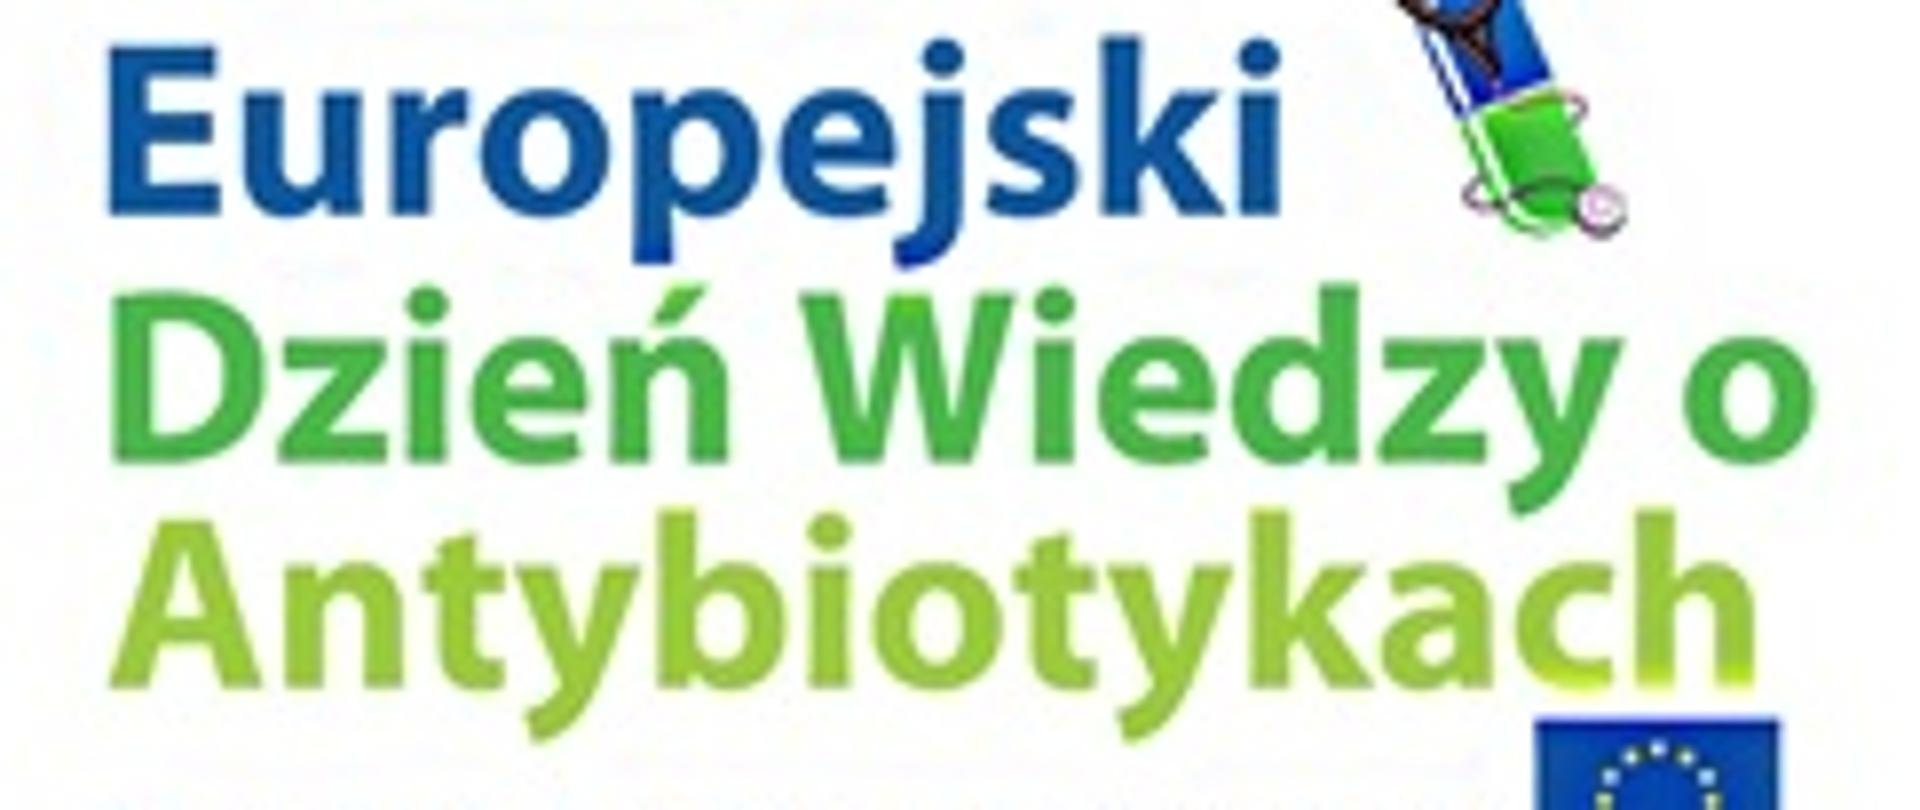 napis 18 listopada Europejski Dzień Wiedzy Wiedzy o Antybiotykach, Europejska Inicjatywa zdrowotna i logotyp Unii Europejskiej